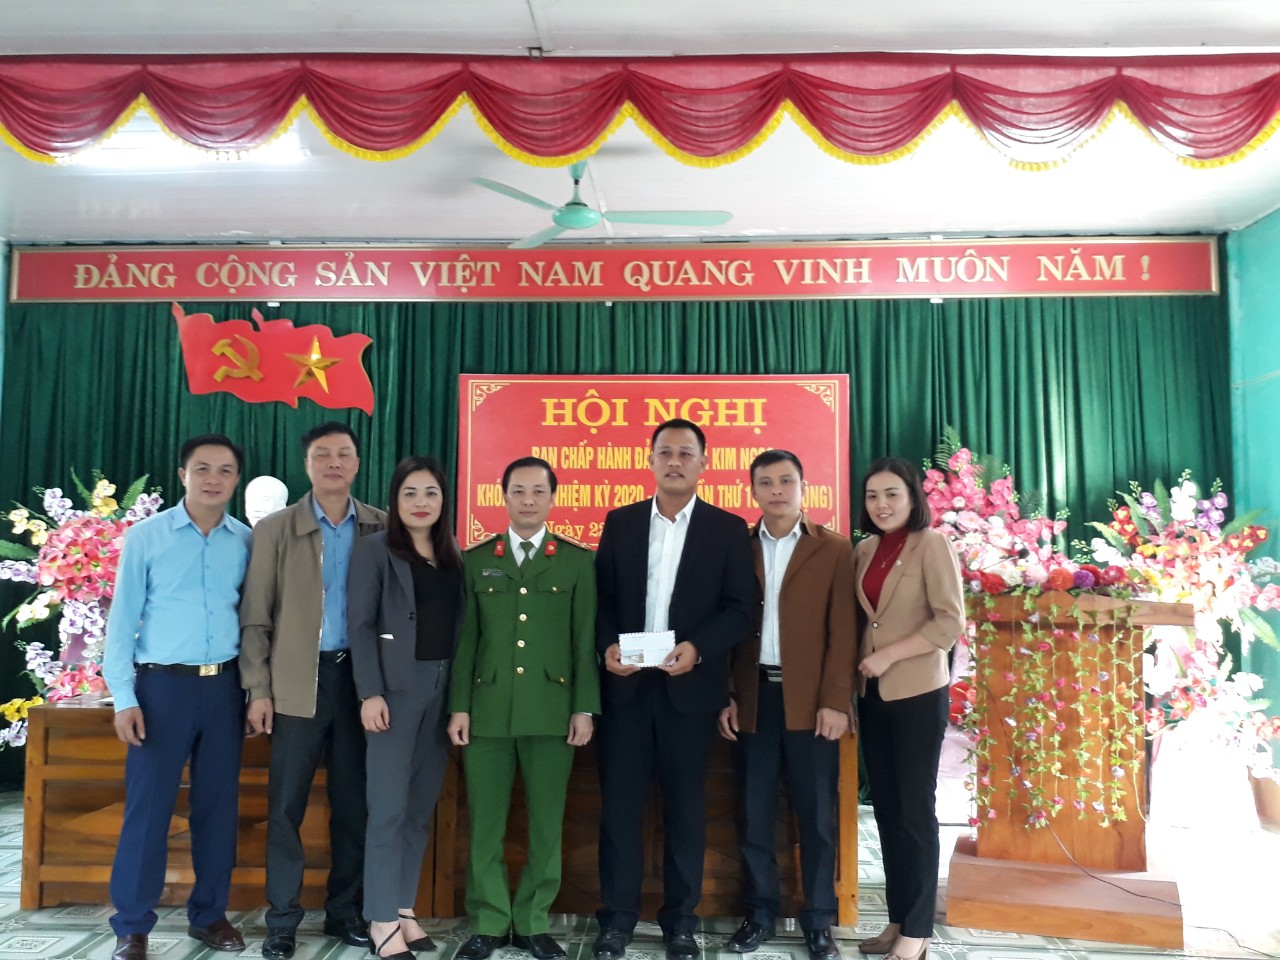 Hội nghị Ban chấp hành Đảng bộ xã Kim Ngọc lần thứ 10, khóa XXIII, nhiệm kỳ 2020 - 2025 (mở rộng)